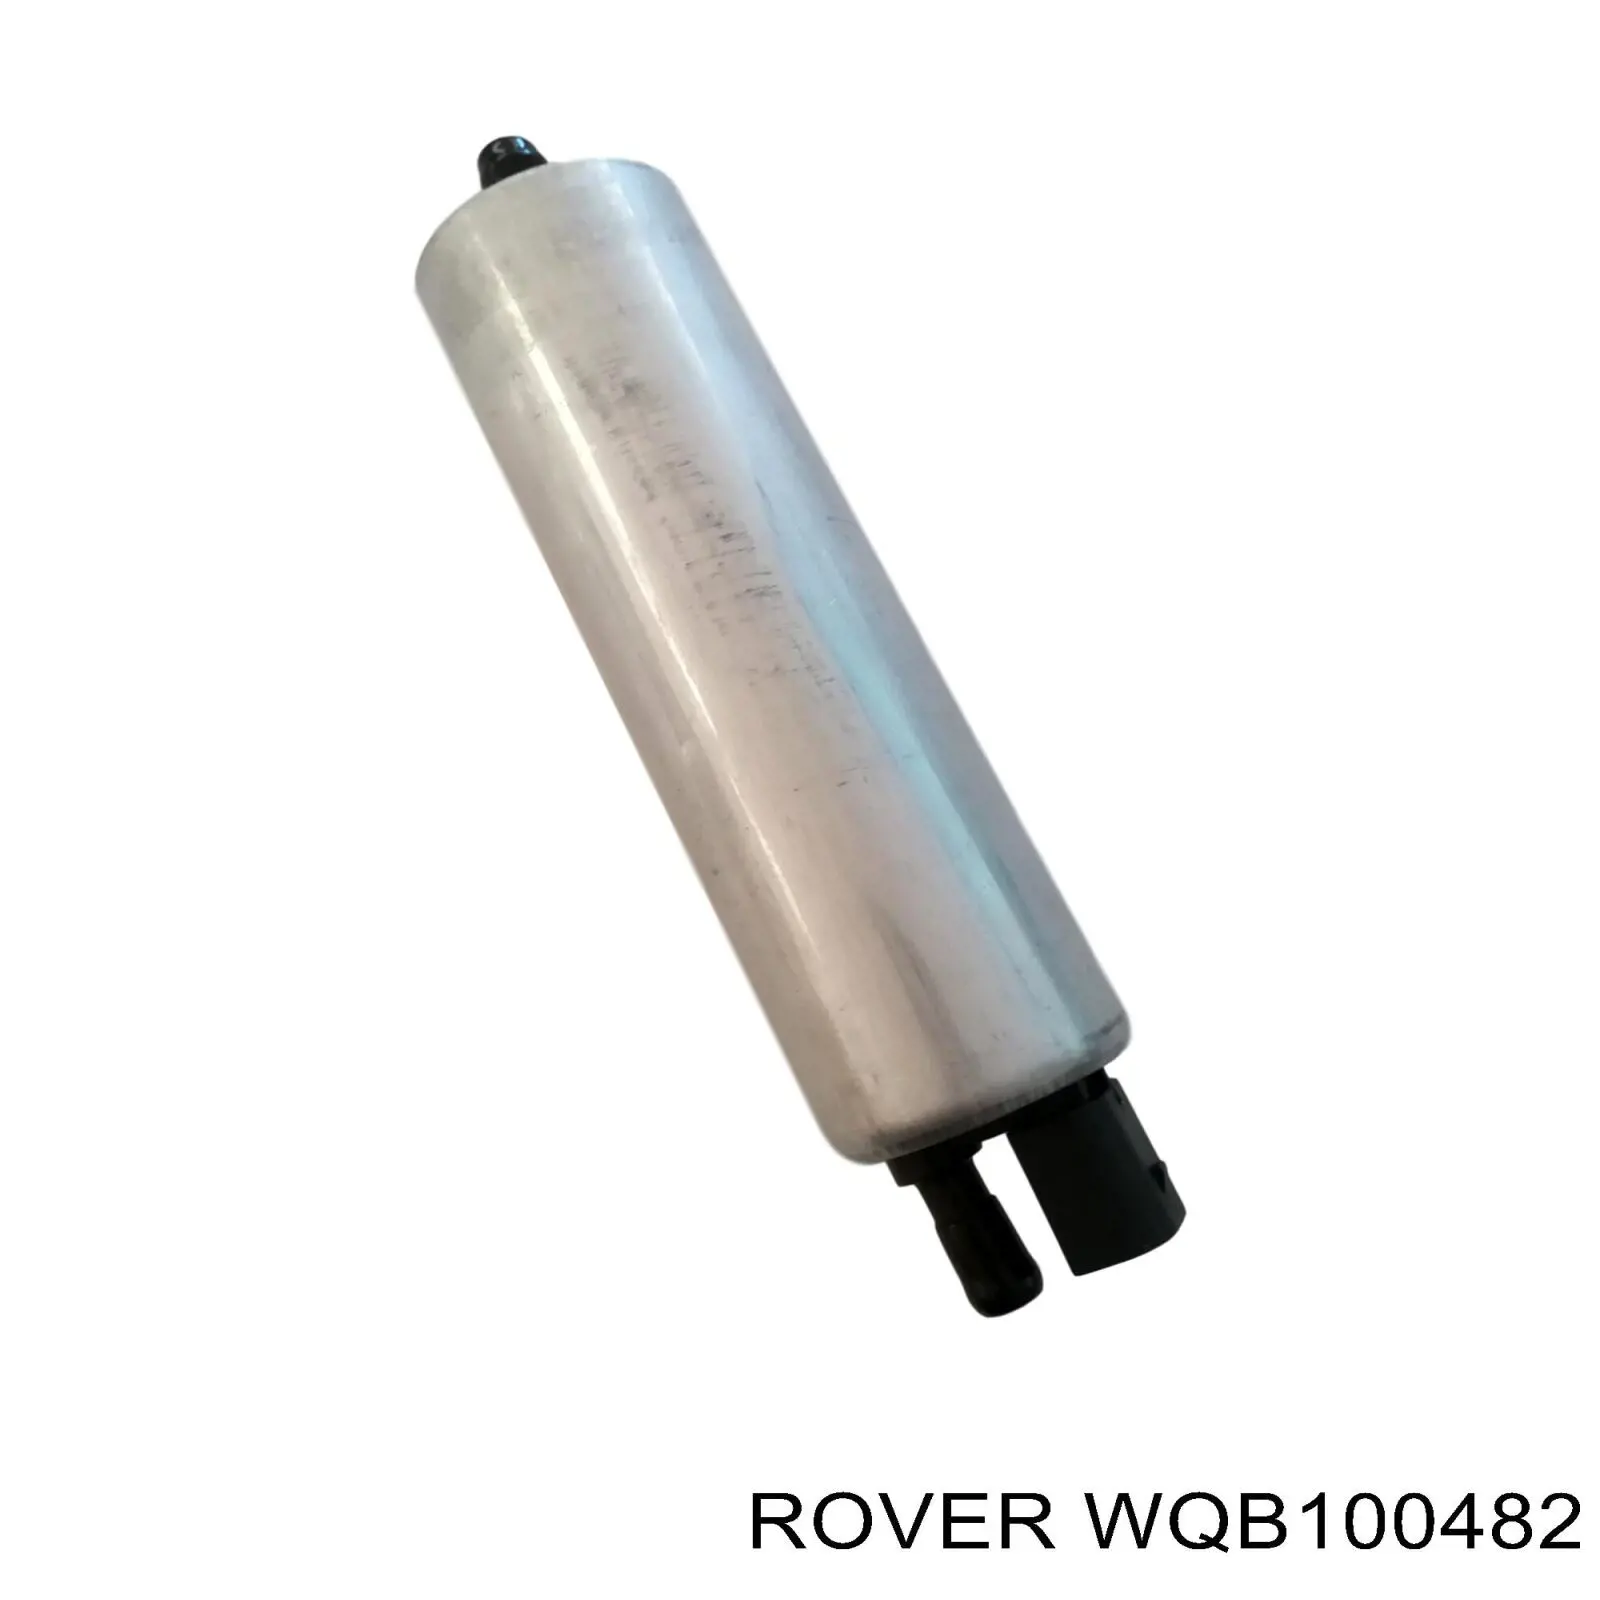 WQB100482 Rover bomba de combustible principal